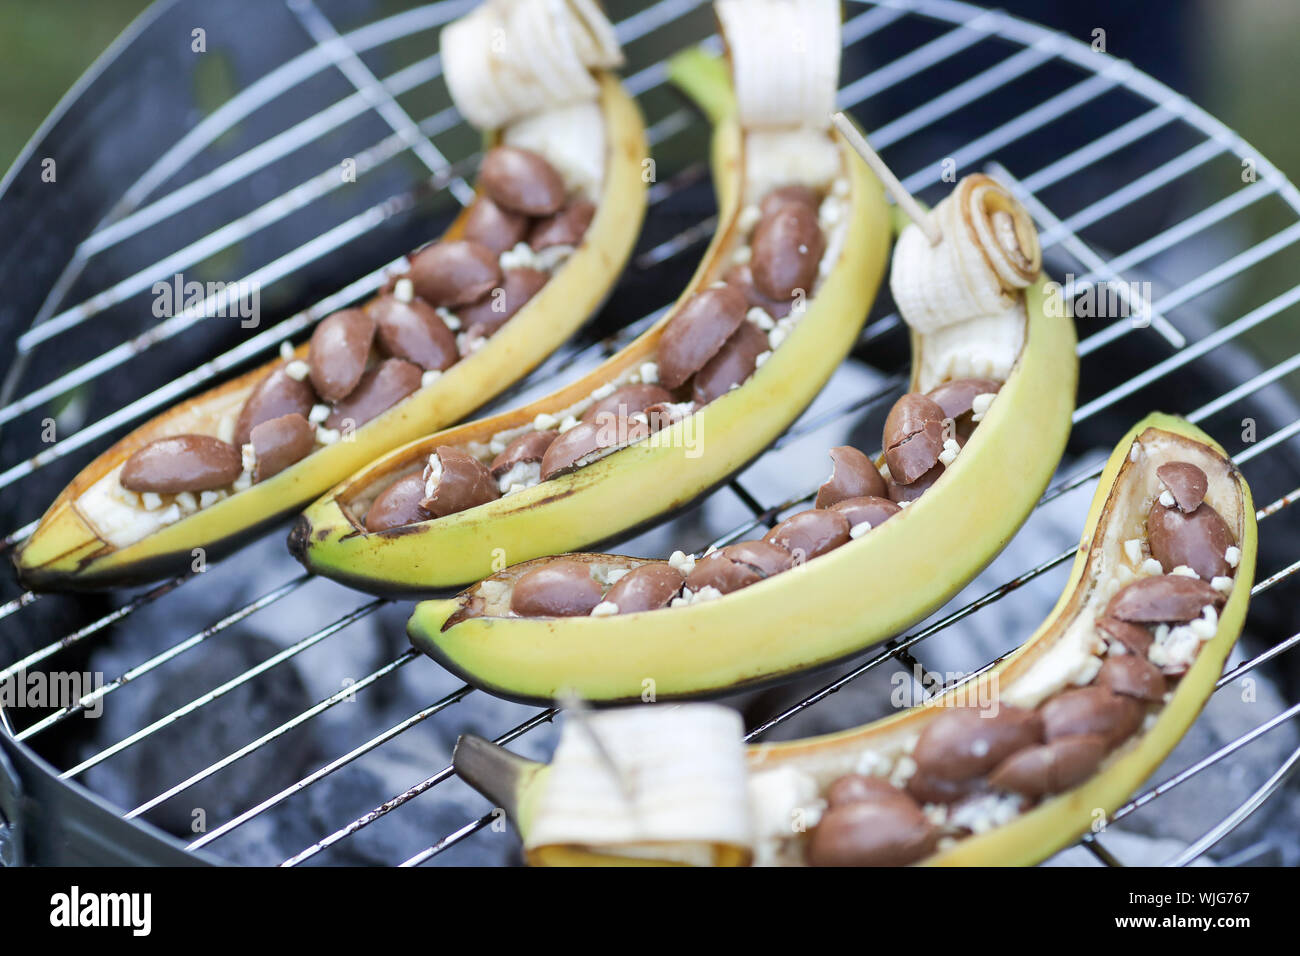 23. August 2019, Sachsen, Leipzig: Bananen mit Schokolade Süßigkeiten  liegen auf einem Grill in einem Park in Leipzig während einer Grillparty.  Foto: Jan Woitas/dpa-Zentralbild/ZB Stockfotografie - Alamy